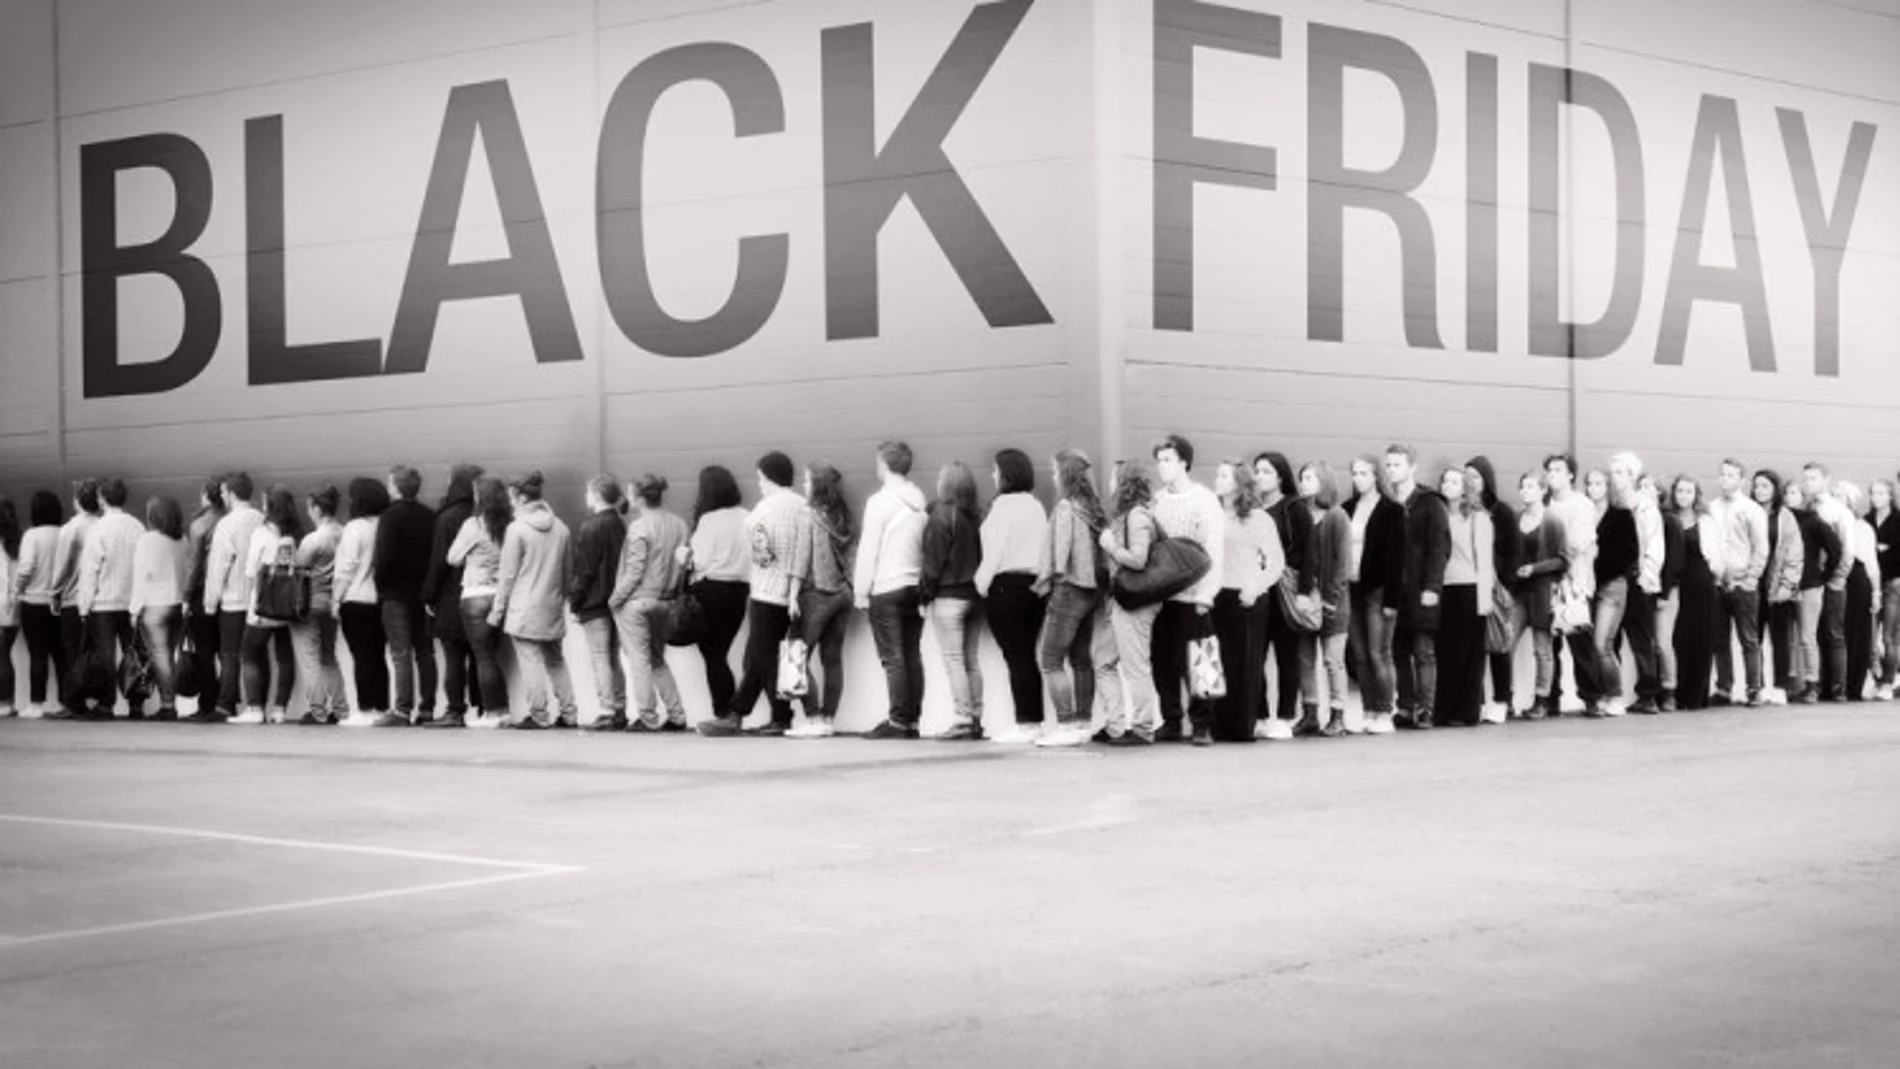 Llega el Black Friday: ¿Cuáles son las mejores webs para hacer las compras?